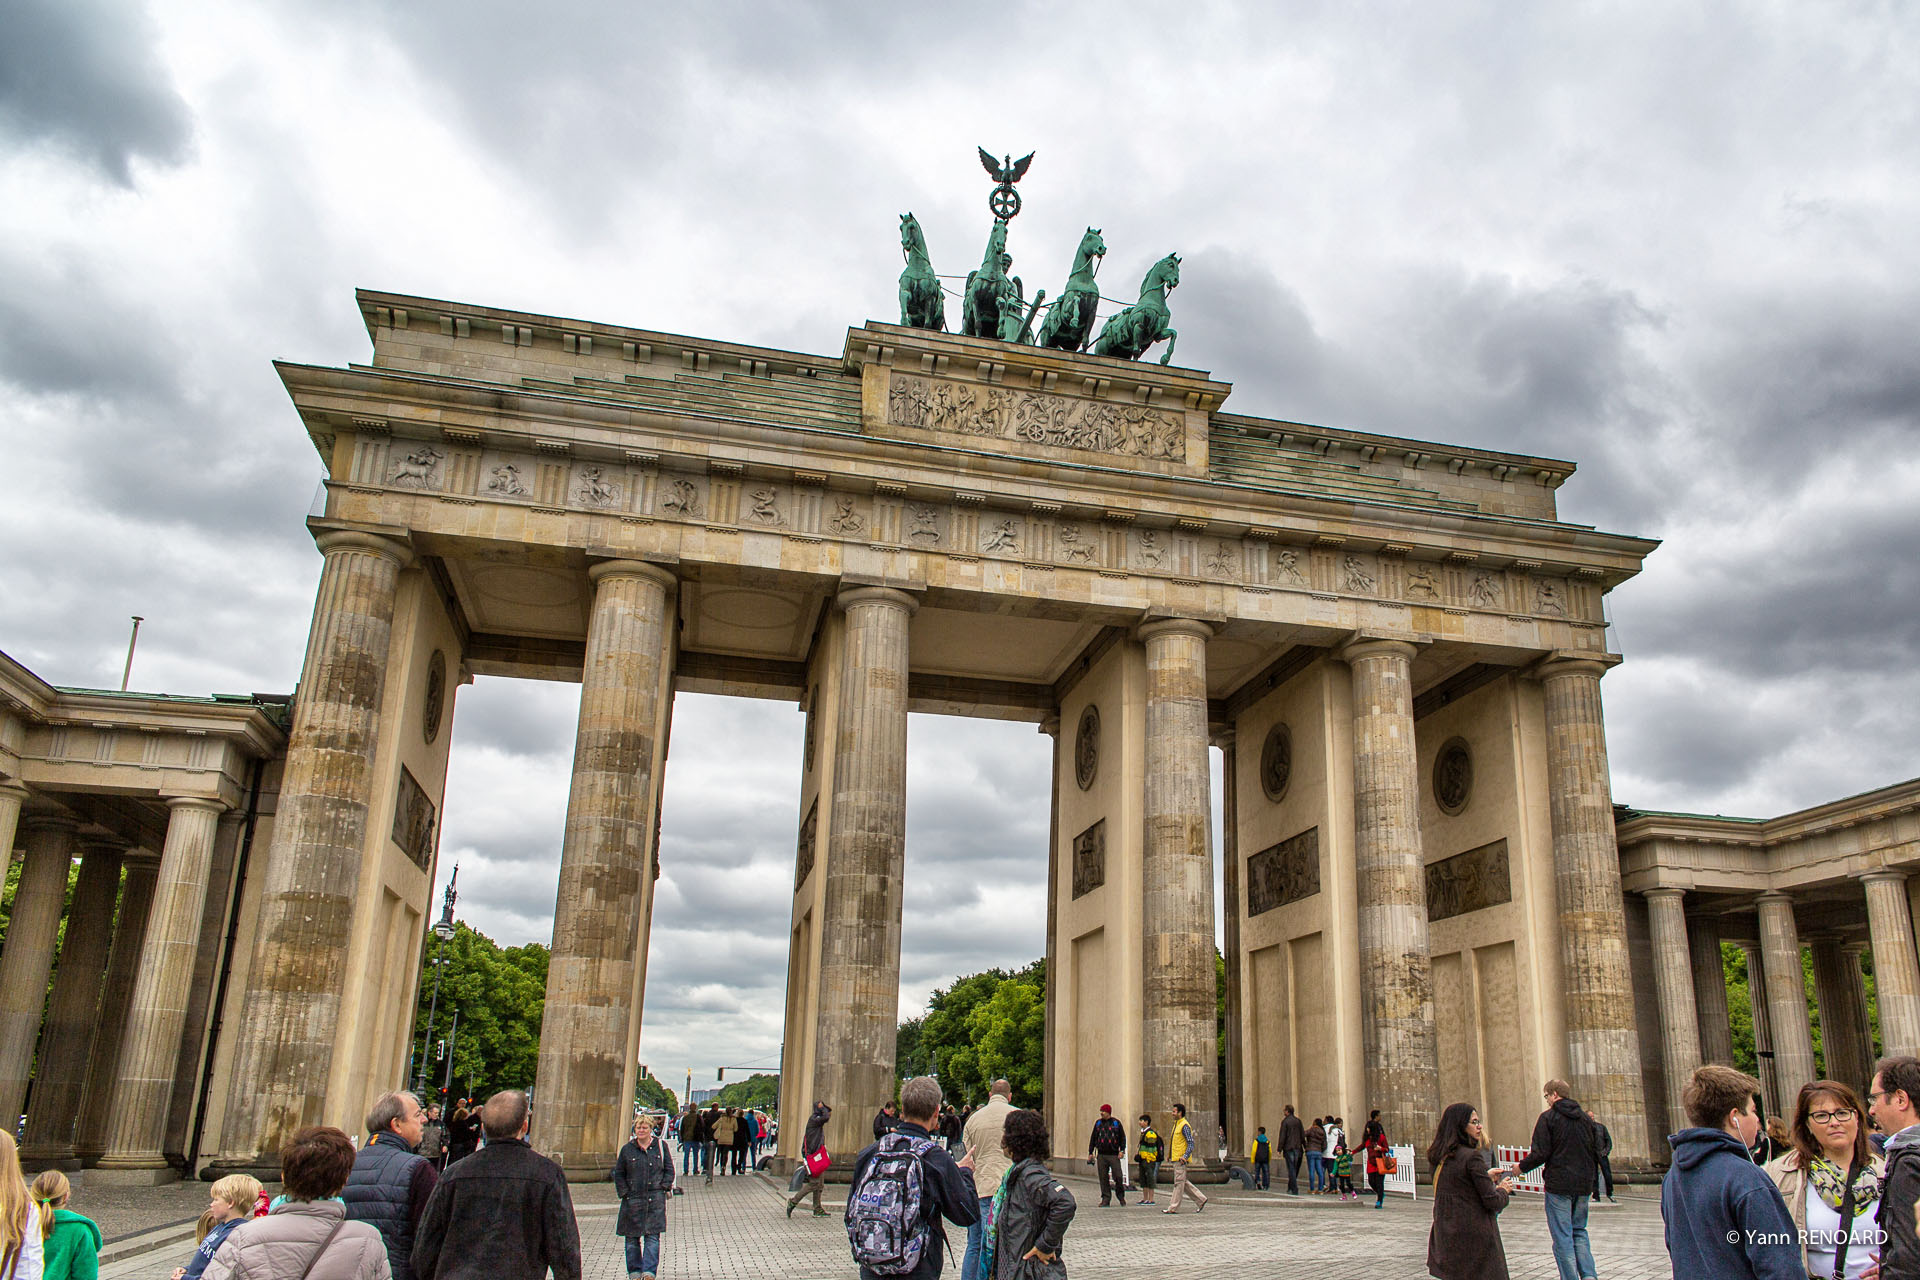 Porte de Brandebourg - Brandenburger Tor (Berlin)